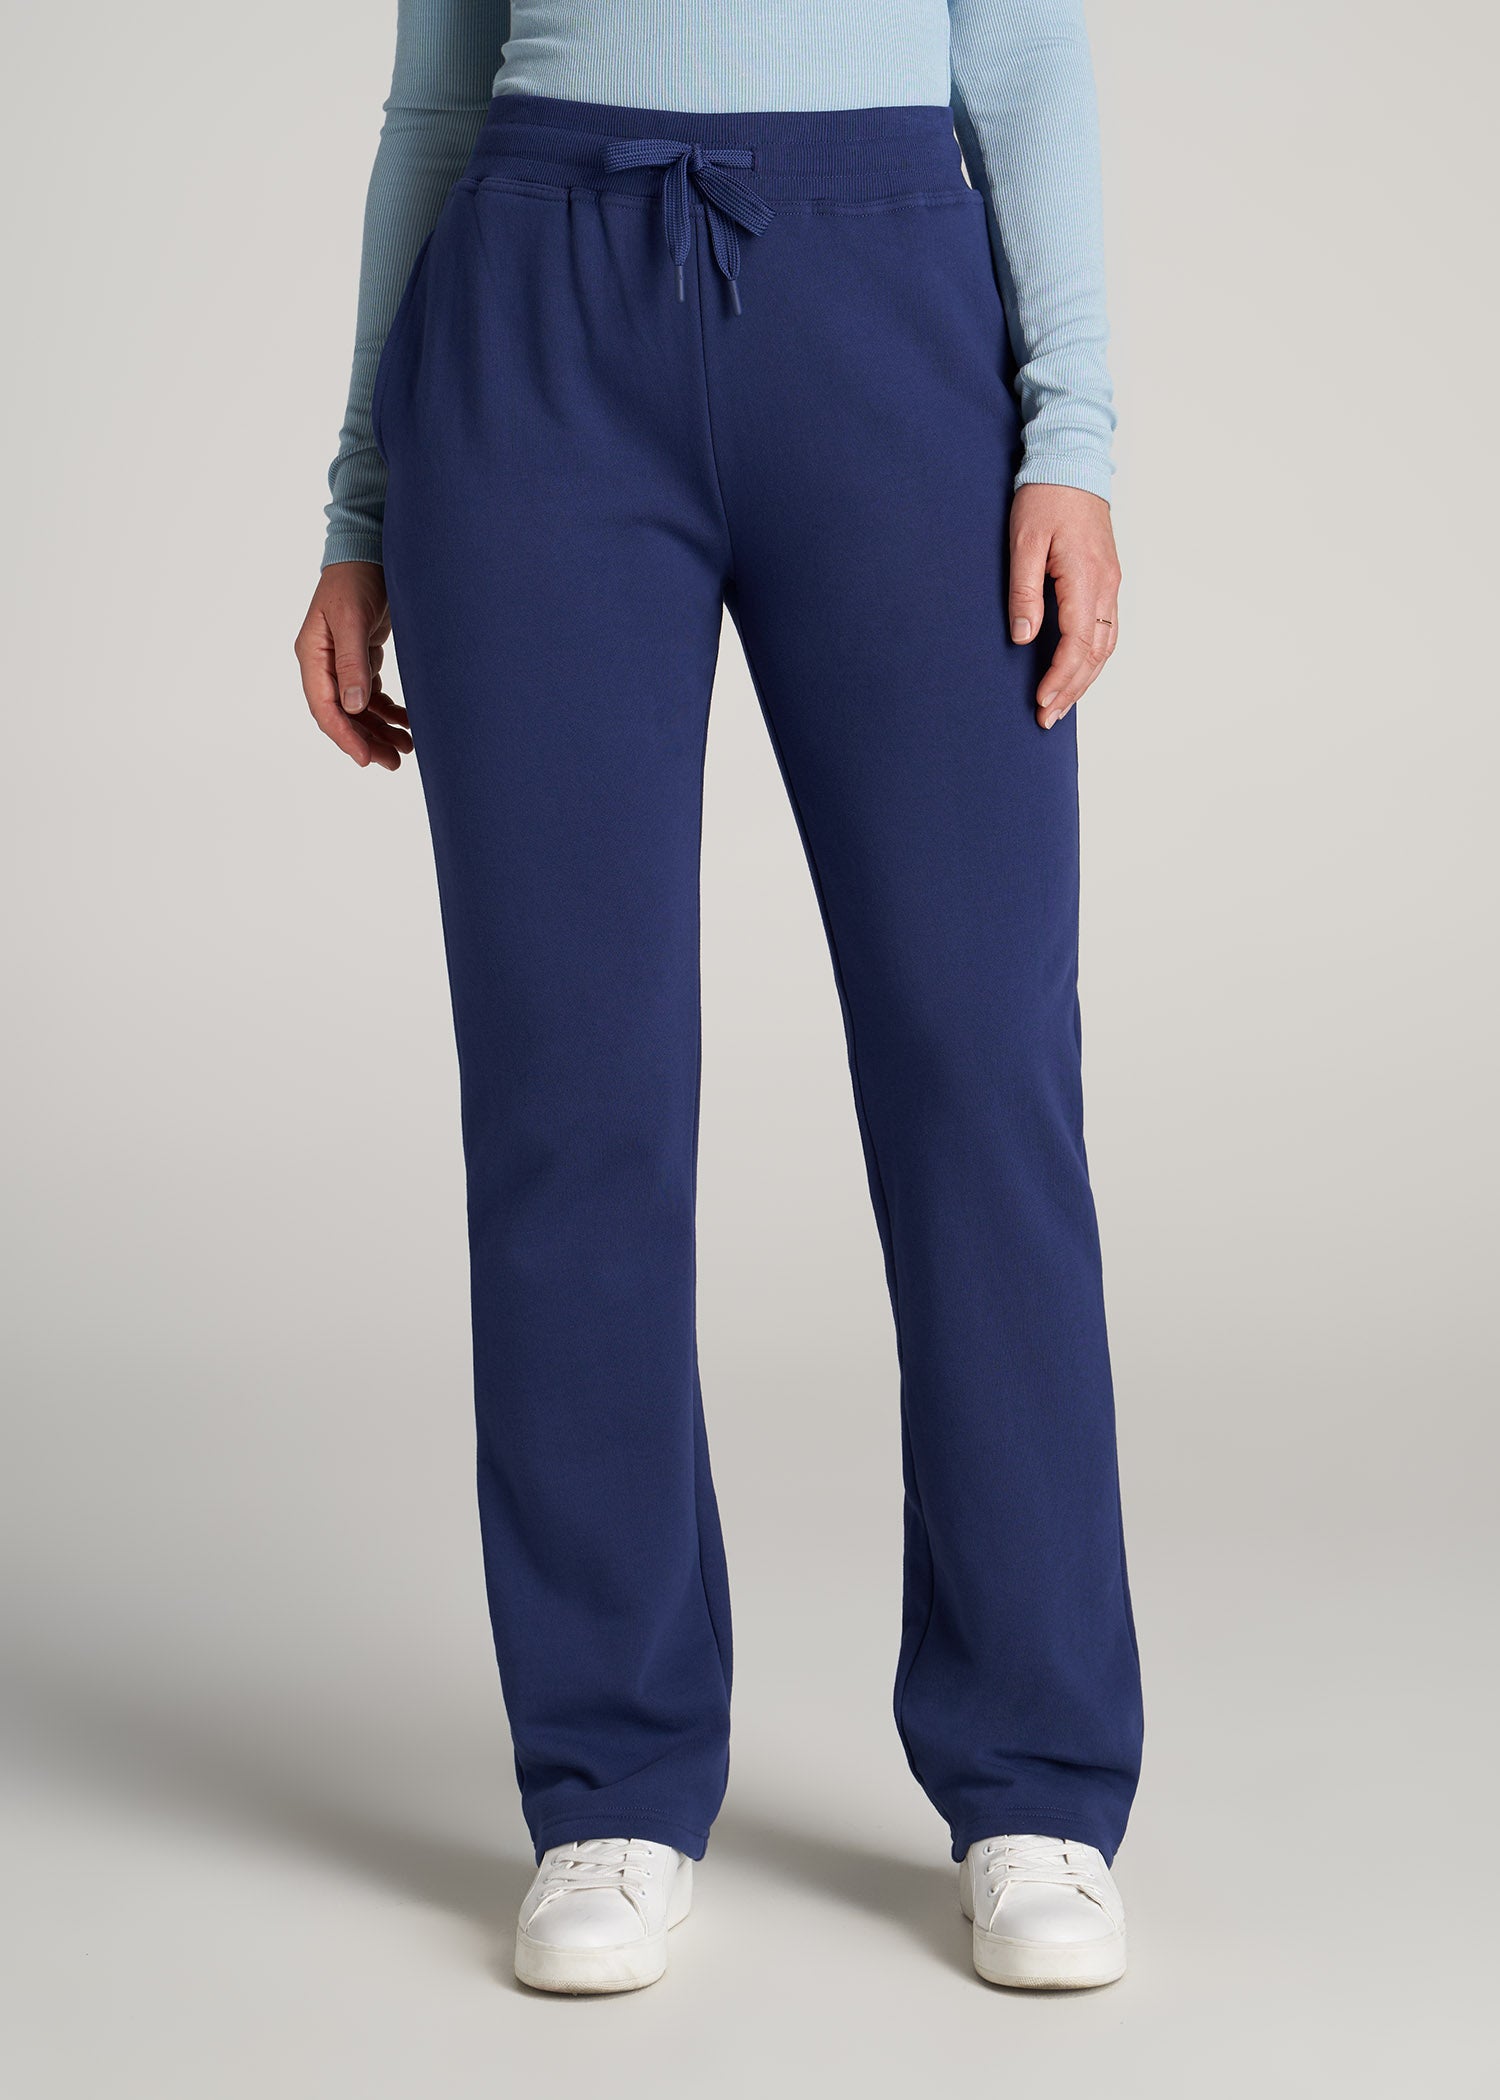 Wearever Fleece Open-Bottom Sweatpants for Tall Women Midnight Blue